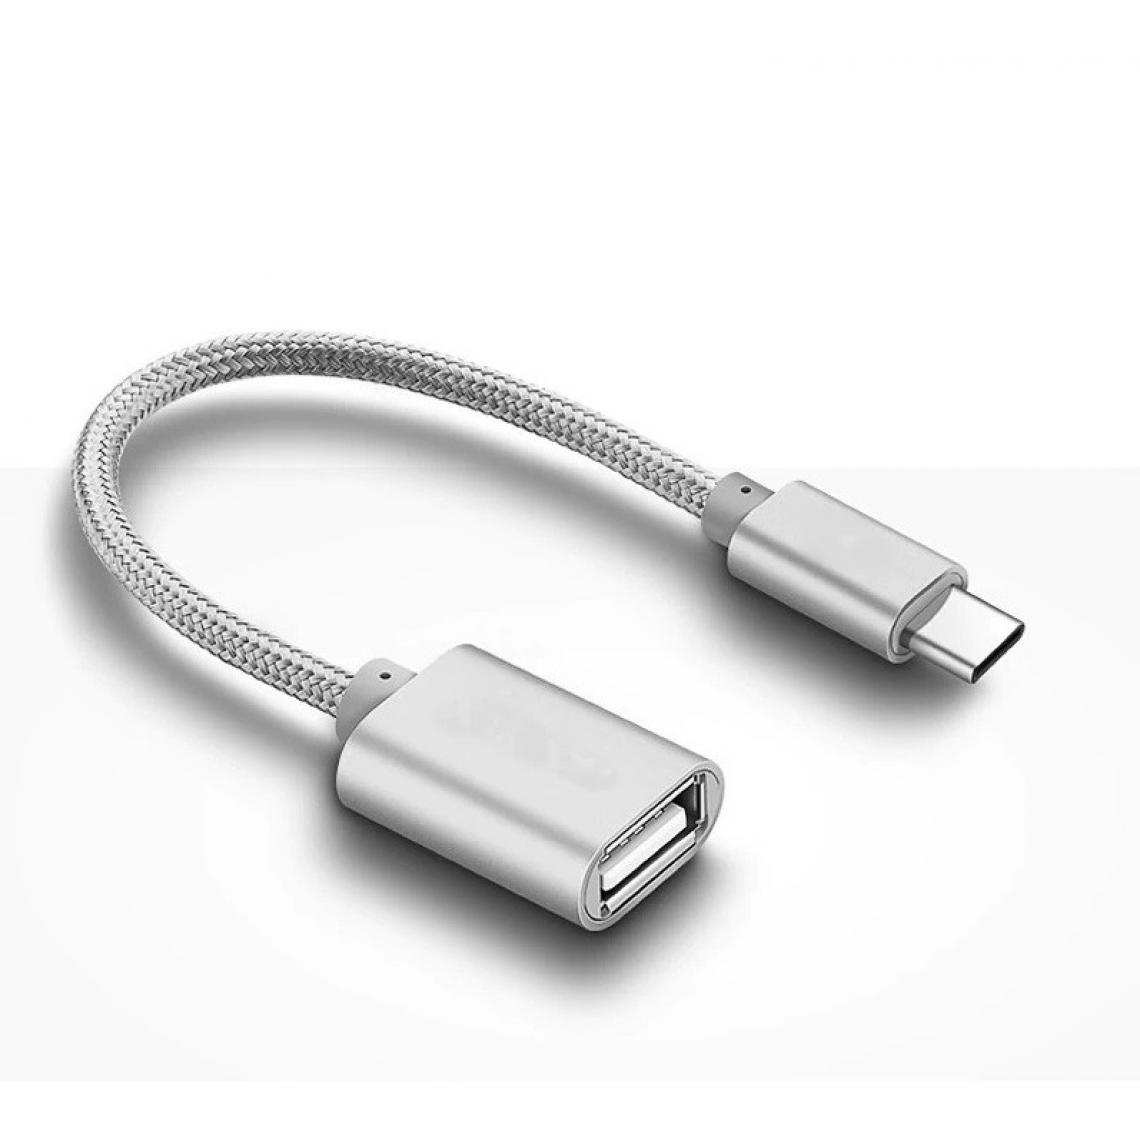 Shot - Adaptateur Type C/USB pour ZUK Z2 Pro Smartphone & MAC USB-C Clef (ARGENT) - Autres accessoires smartphone